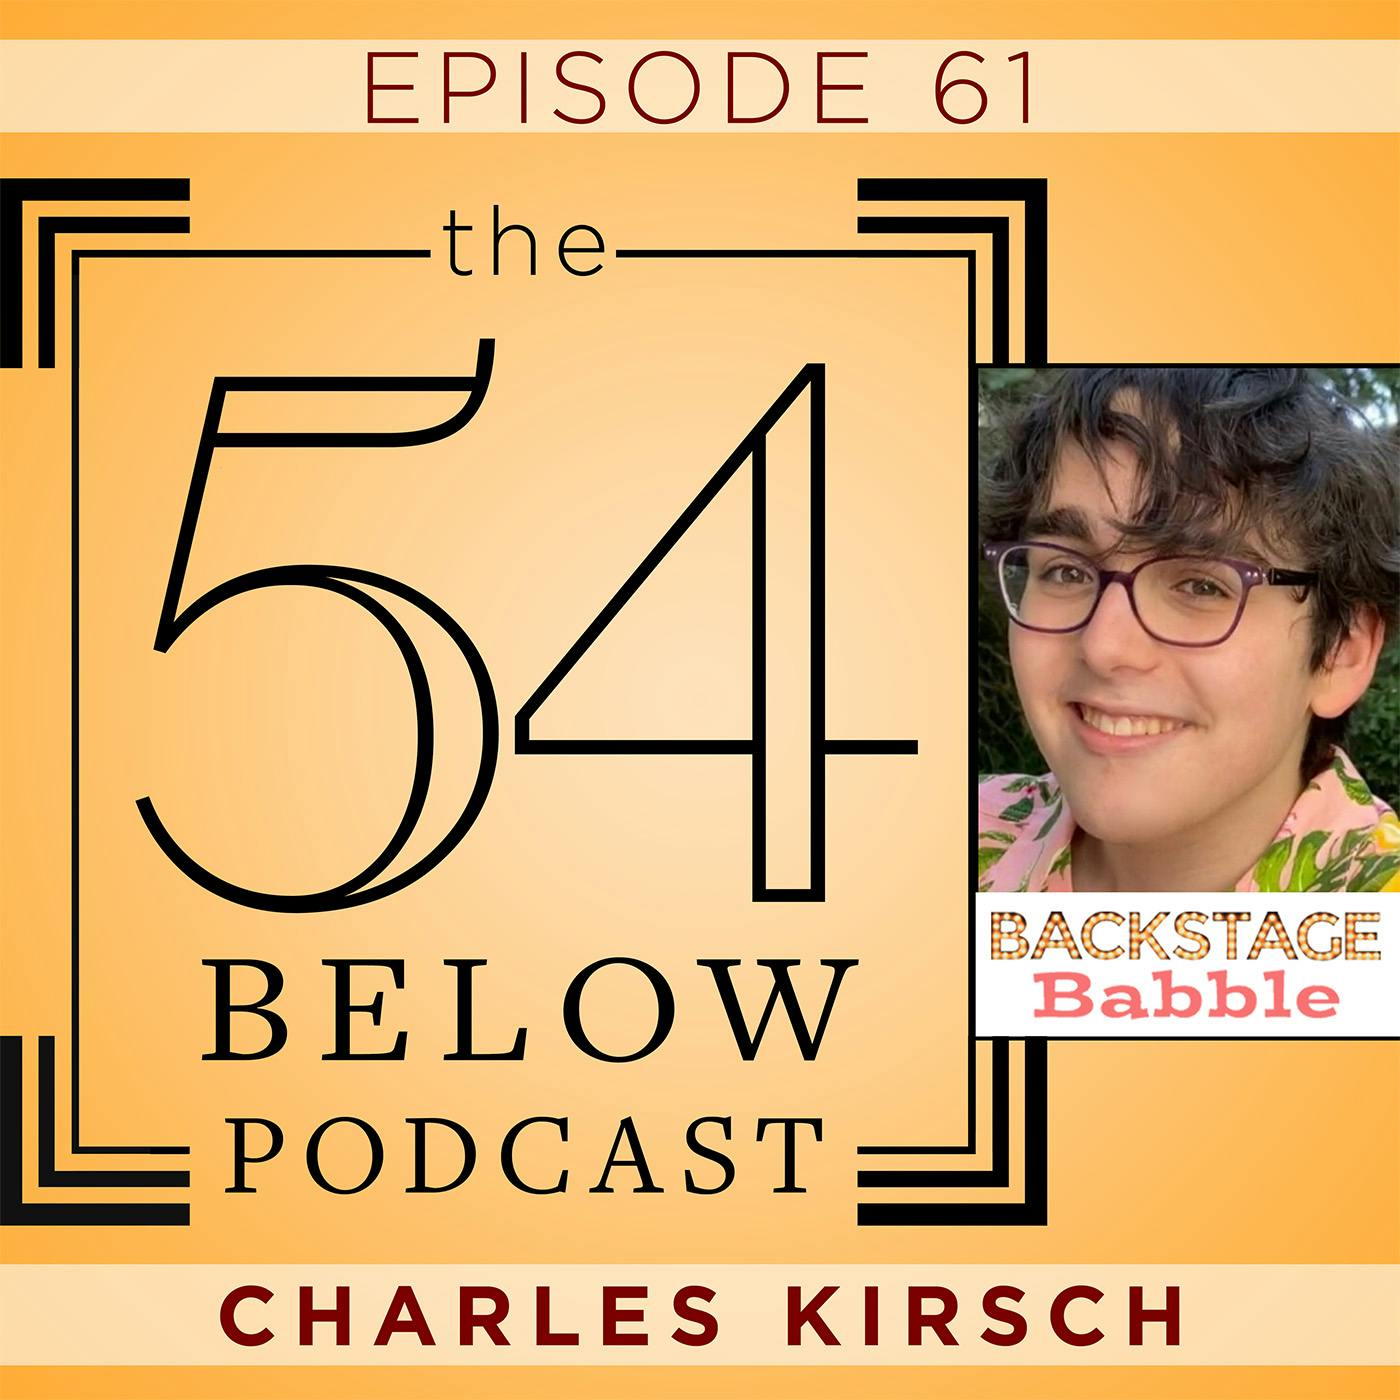 Episode 61: CHARLES KIRSCH